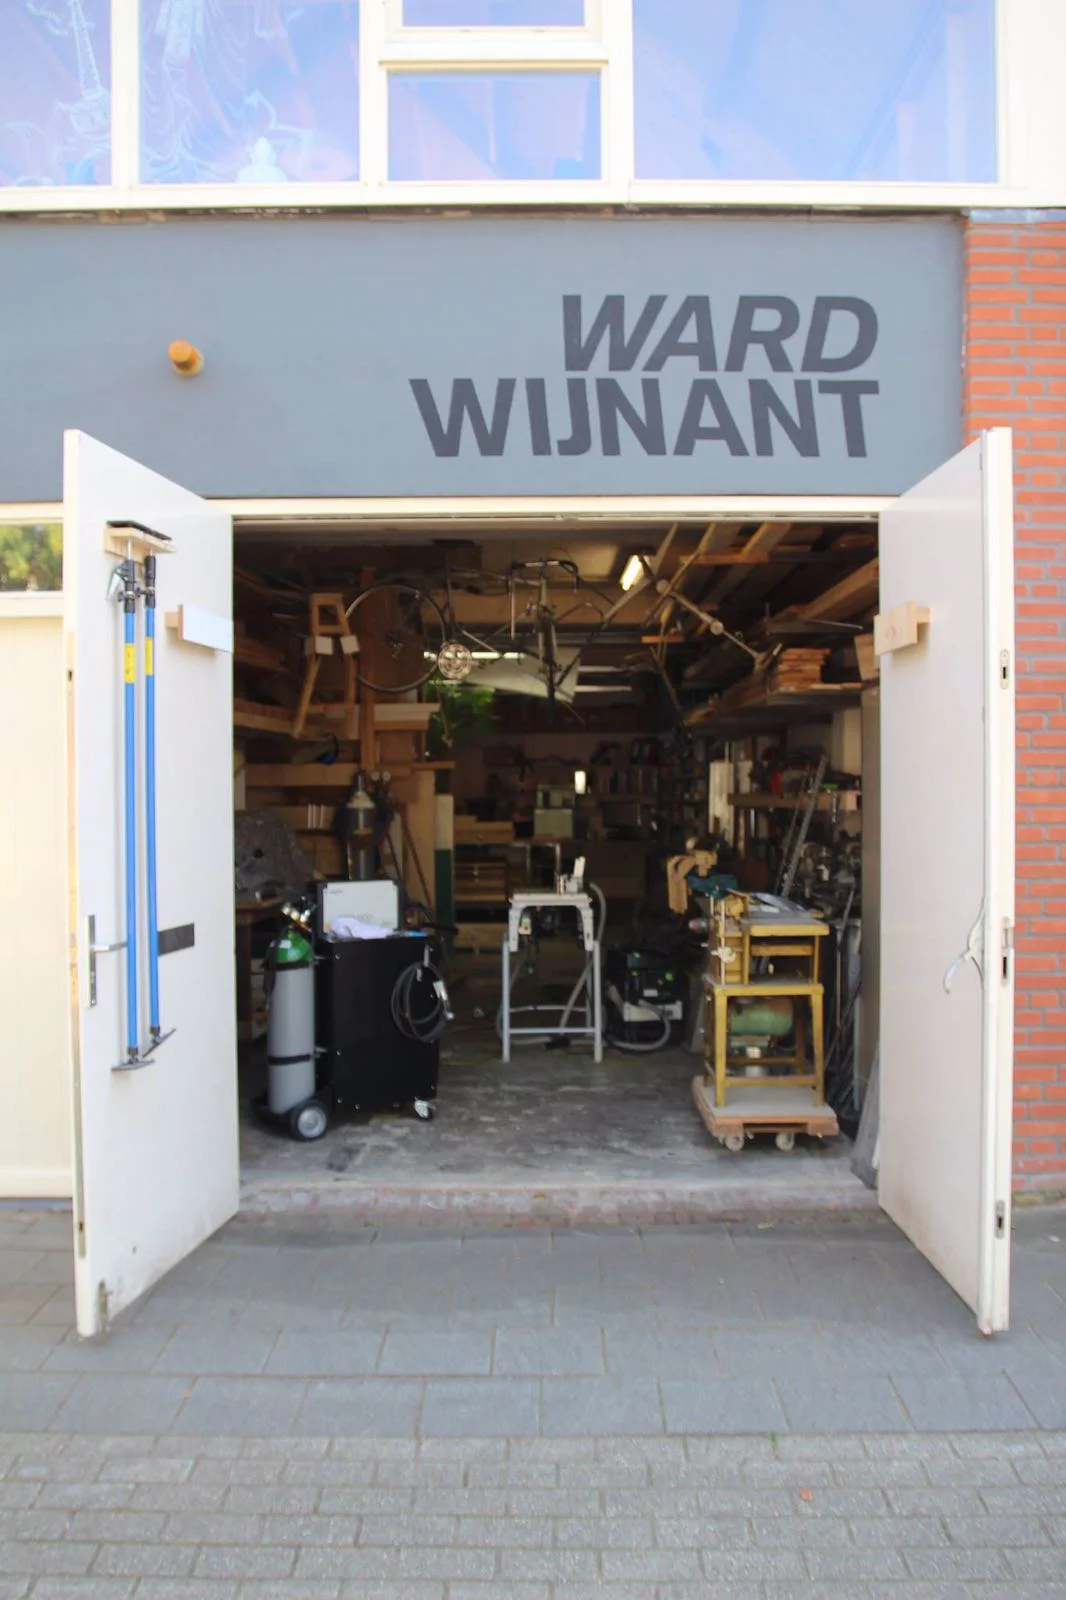 Studio of designer Ward Wijnant